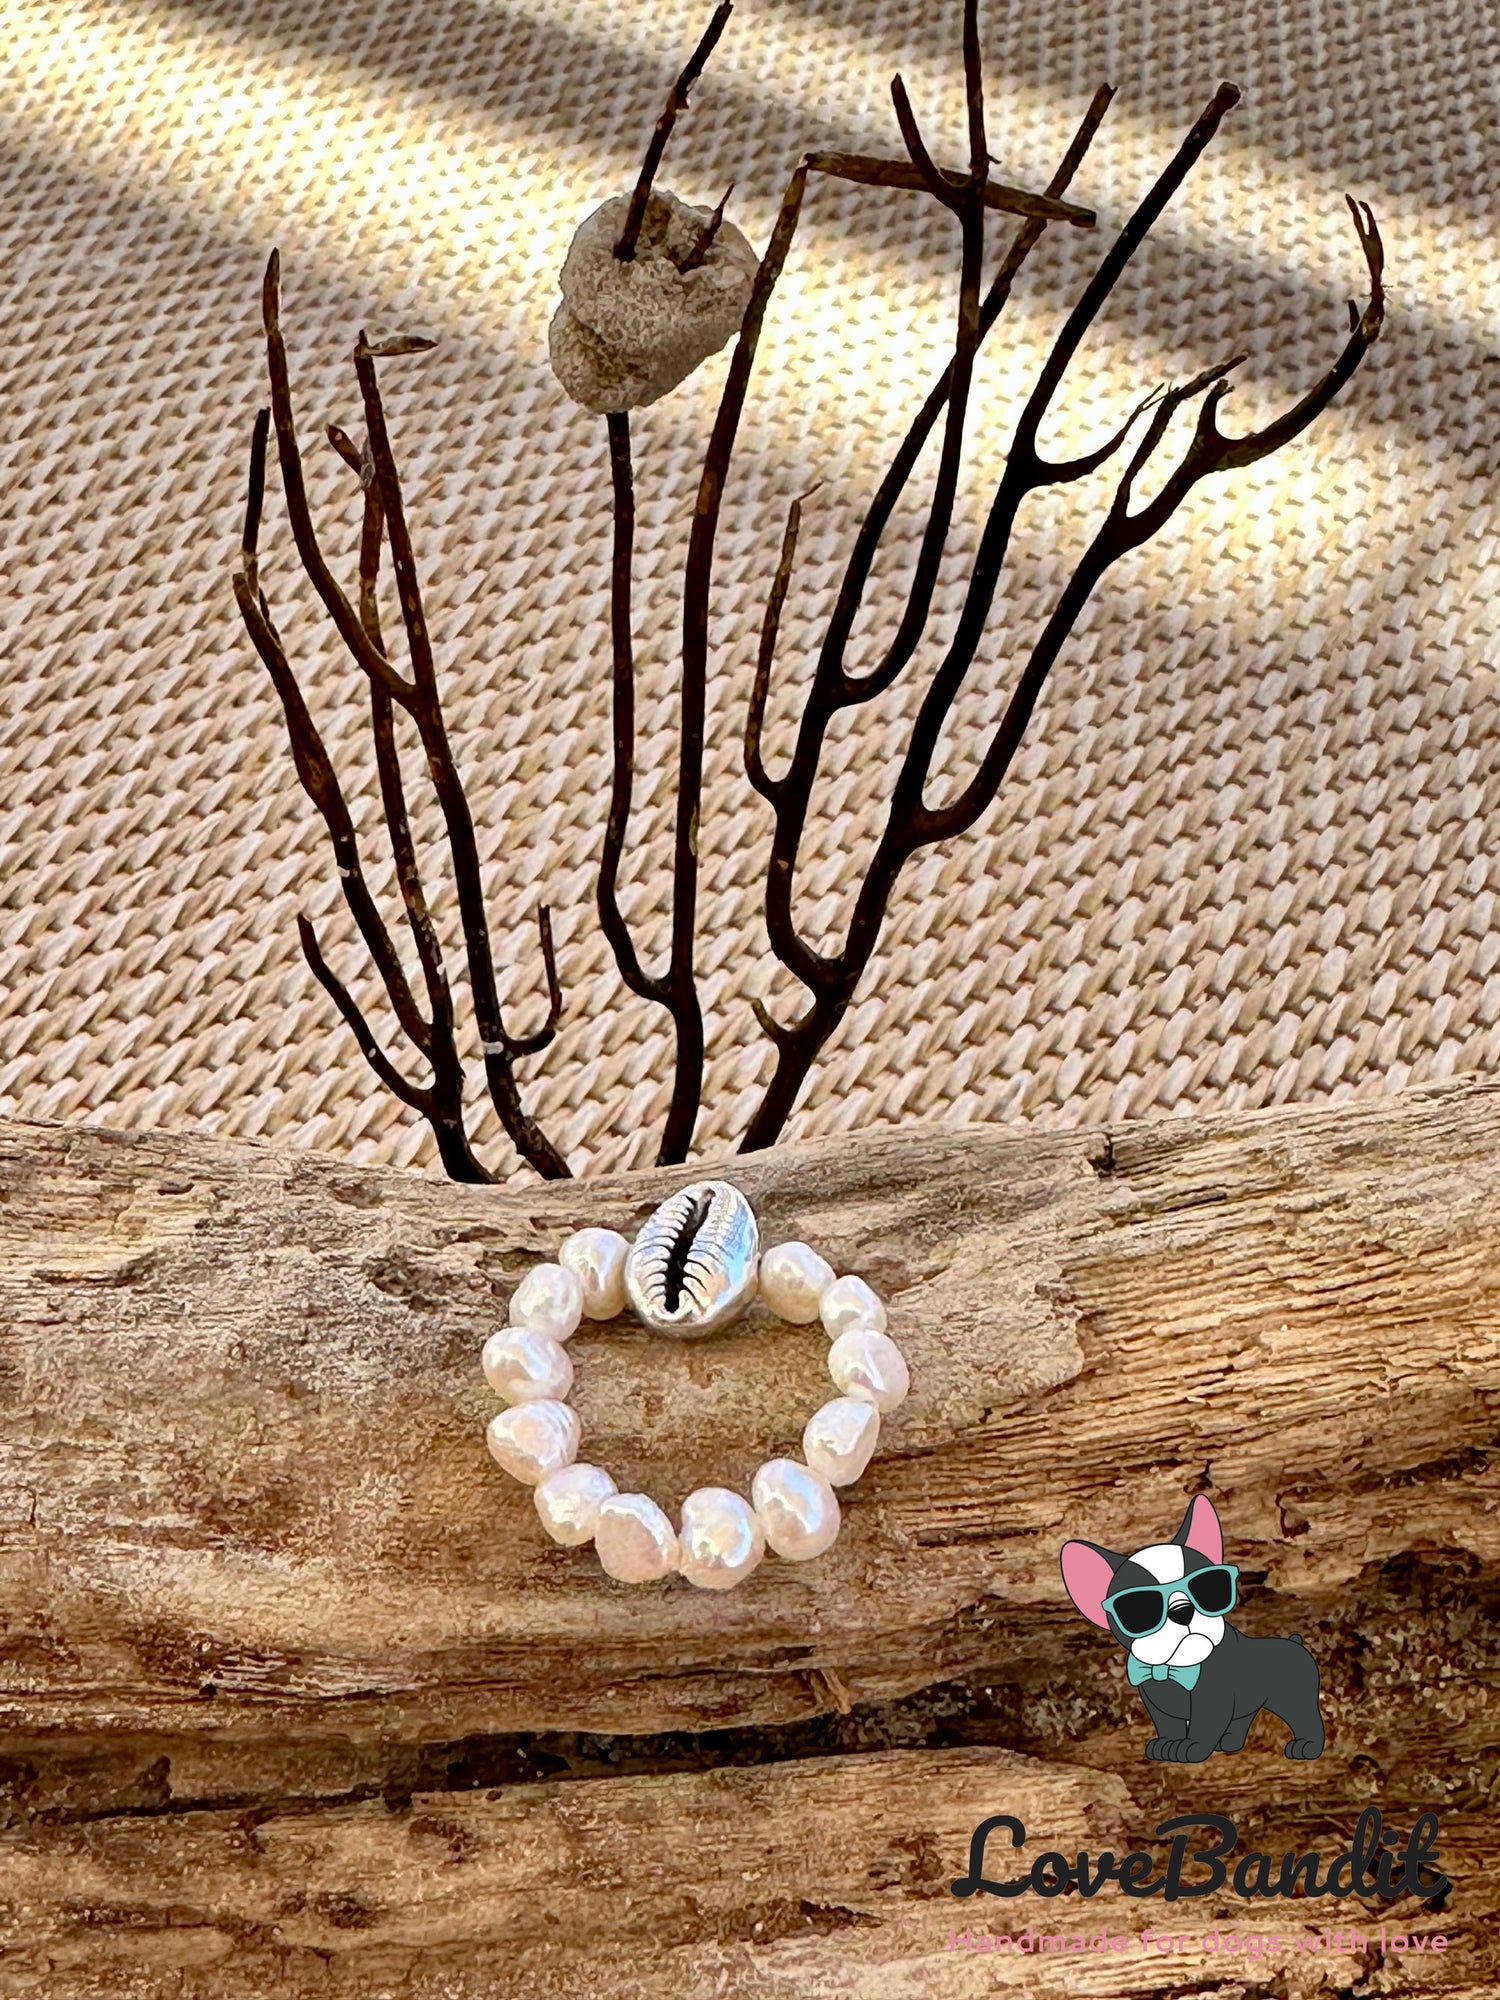 Süsswasserperlen Ring mit Metallelement Schildkröte, Blume, Baum Lovebandit